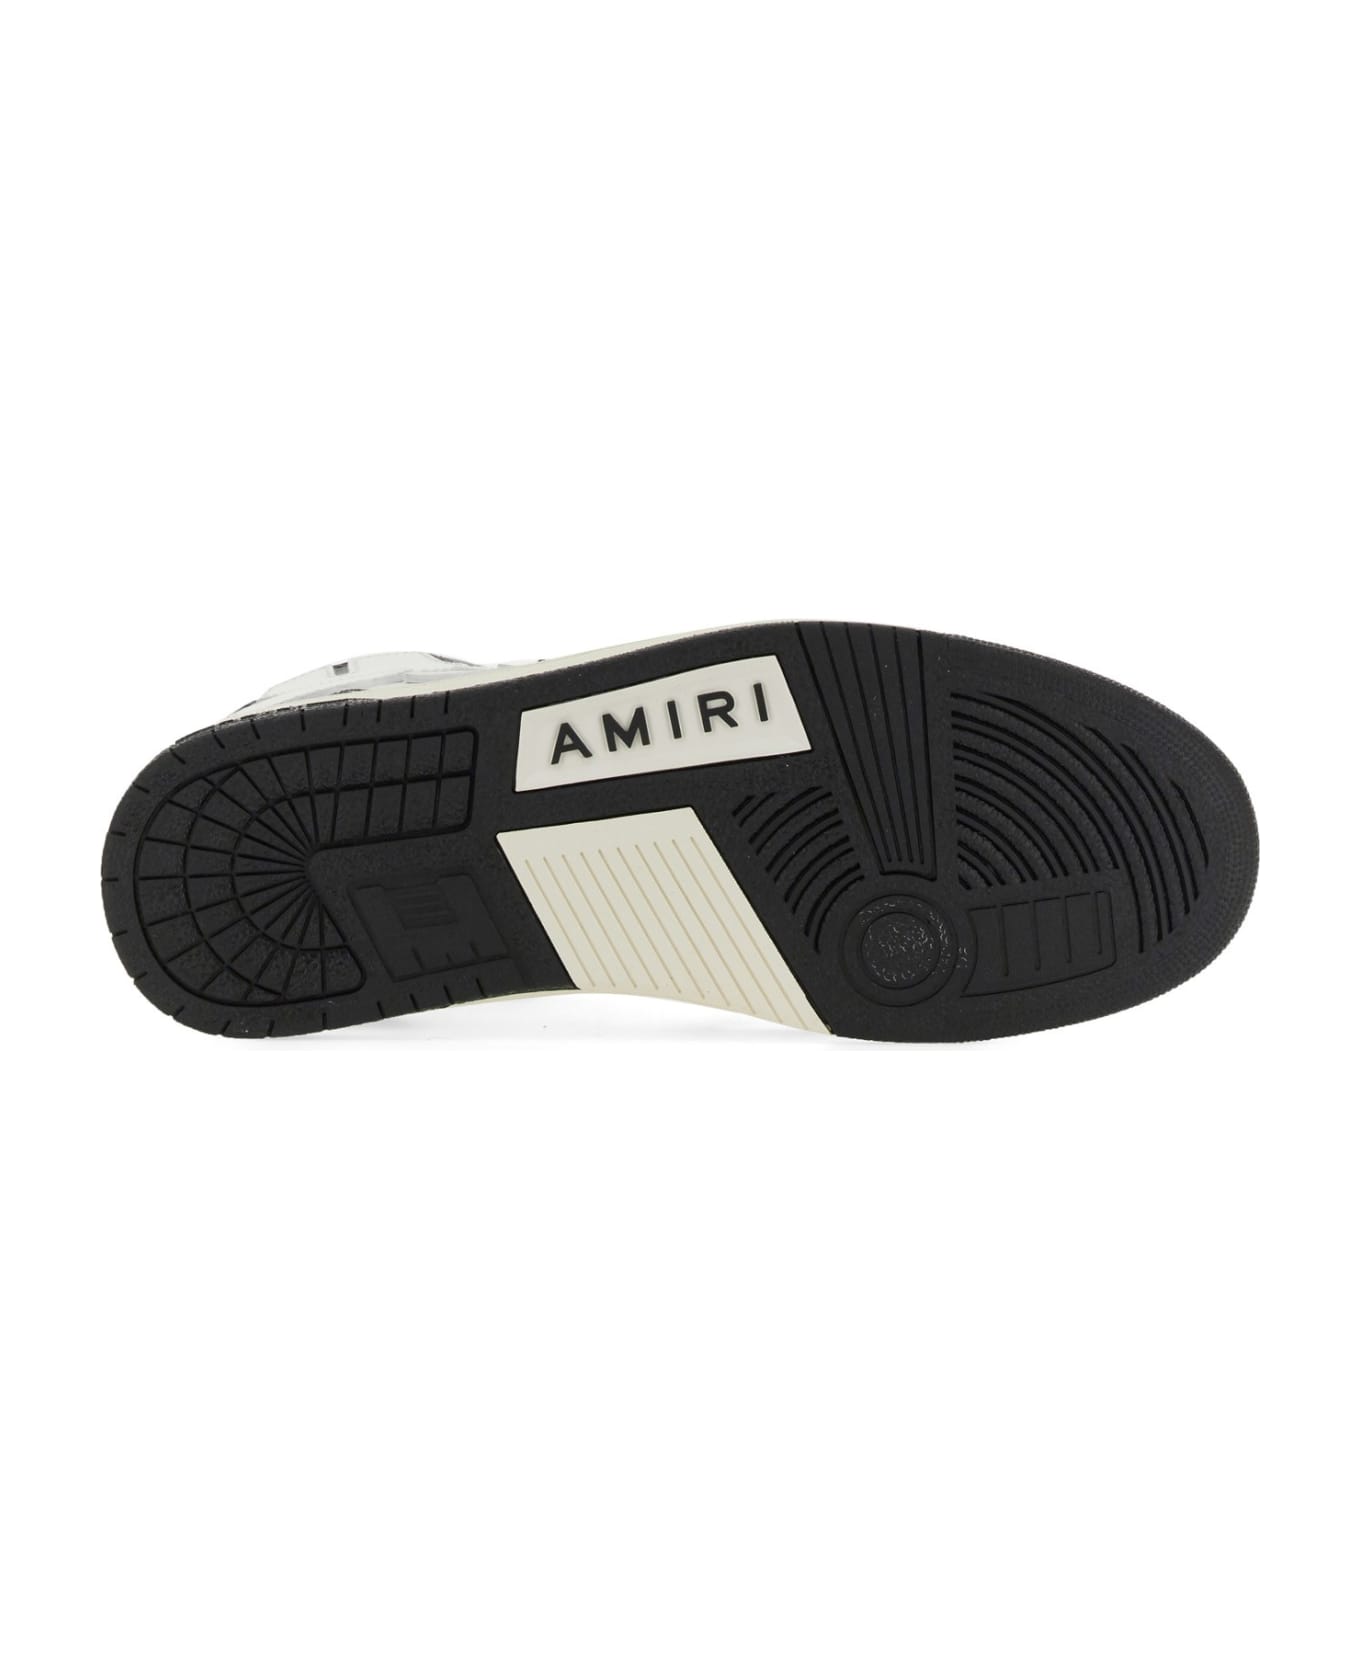 AMIRI Skel Top Hi Sneaker - NERO